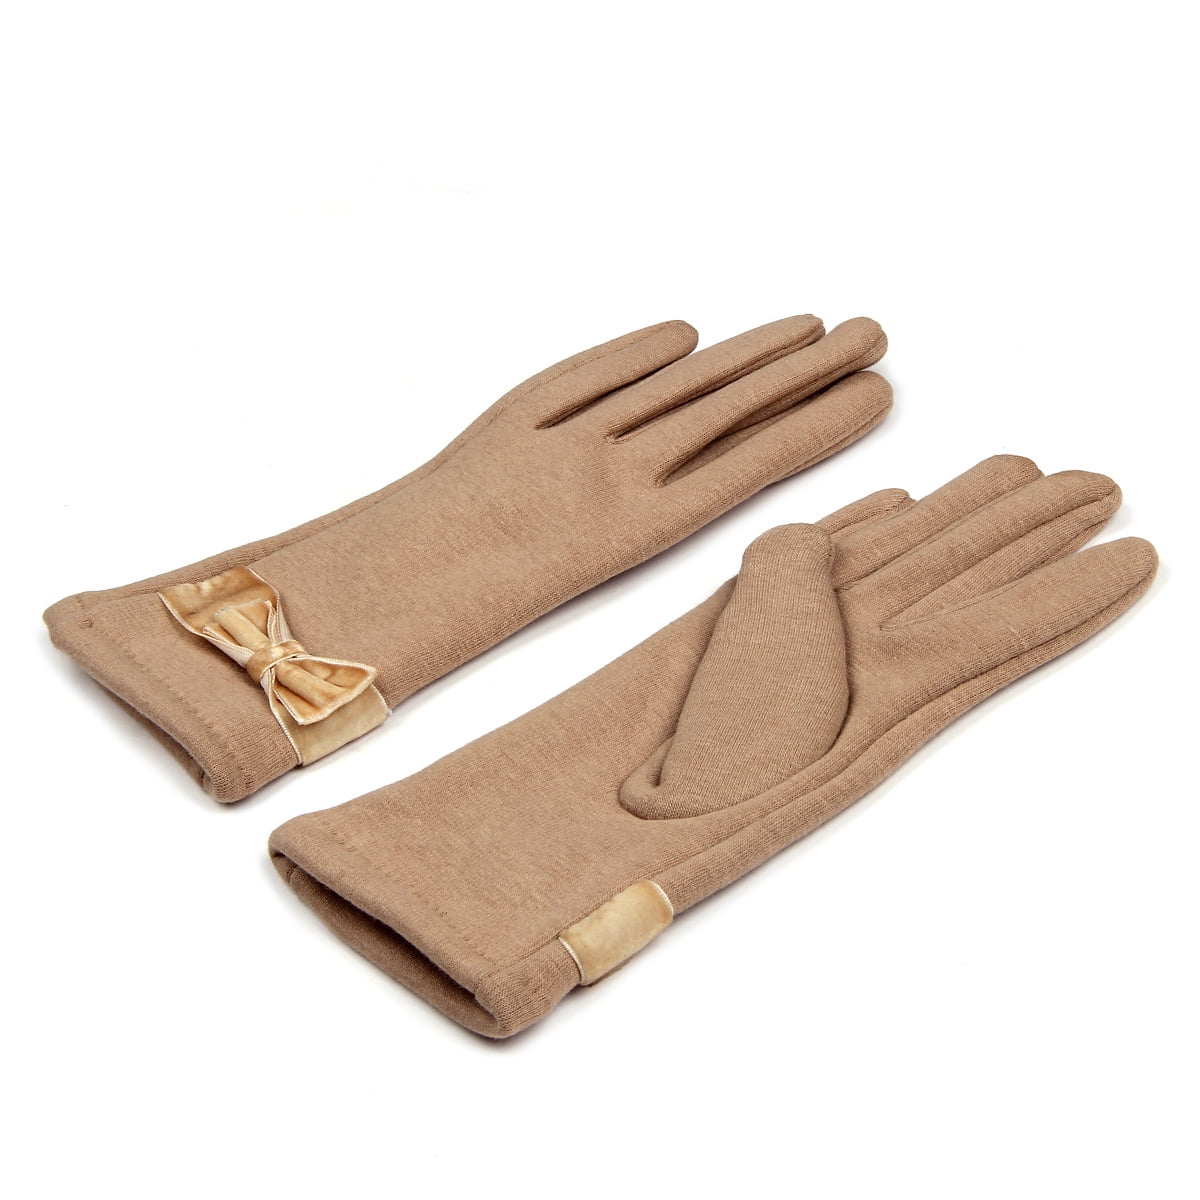 Autumn/winter pure wool thread gloves for men and women Damen Accessoires Handschuhe Pure Handschuhe 